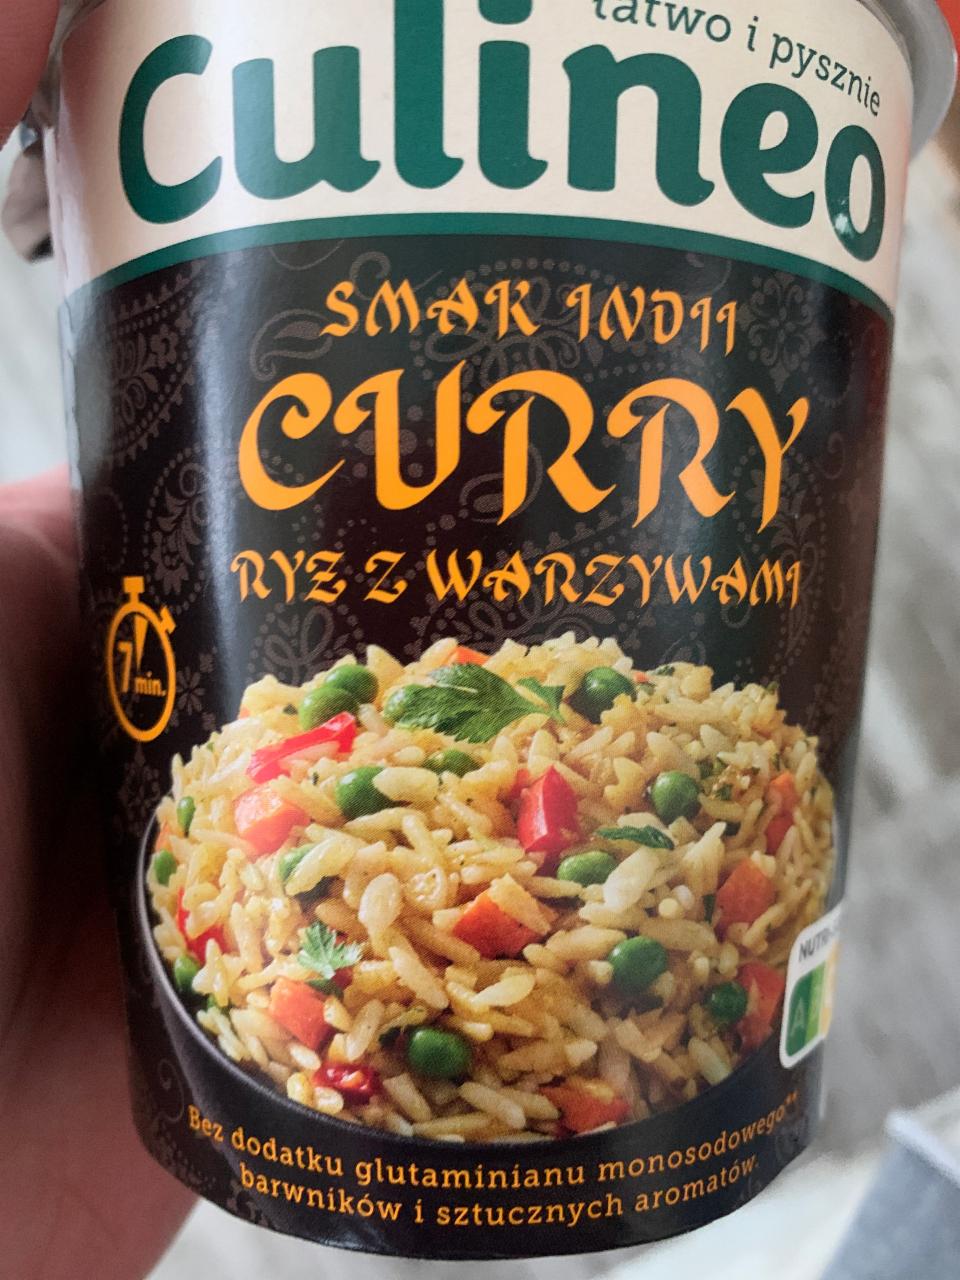 Фото - Curry ryż z warzywami Culineo